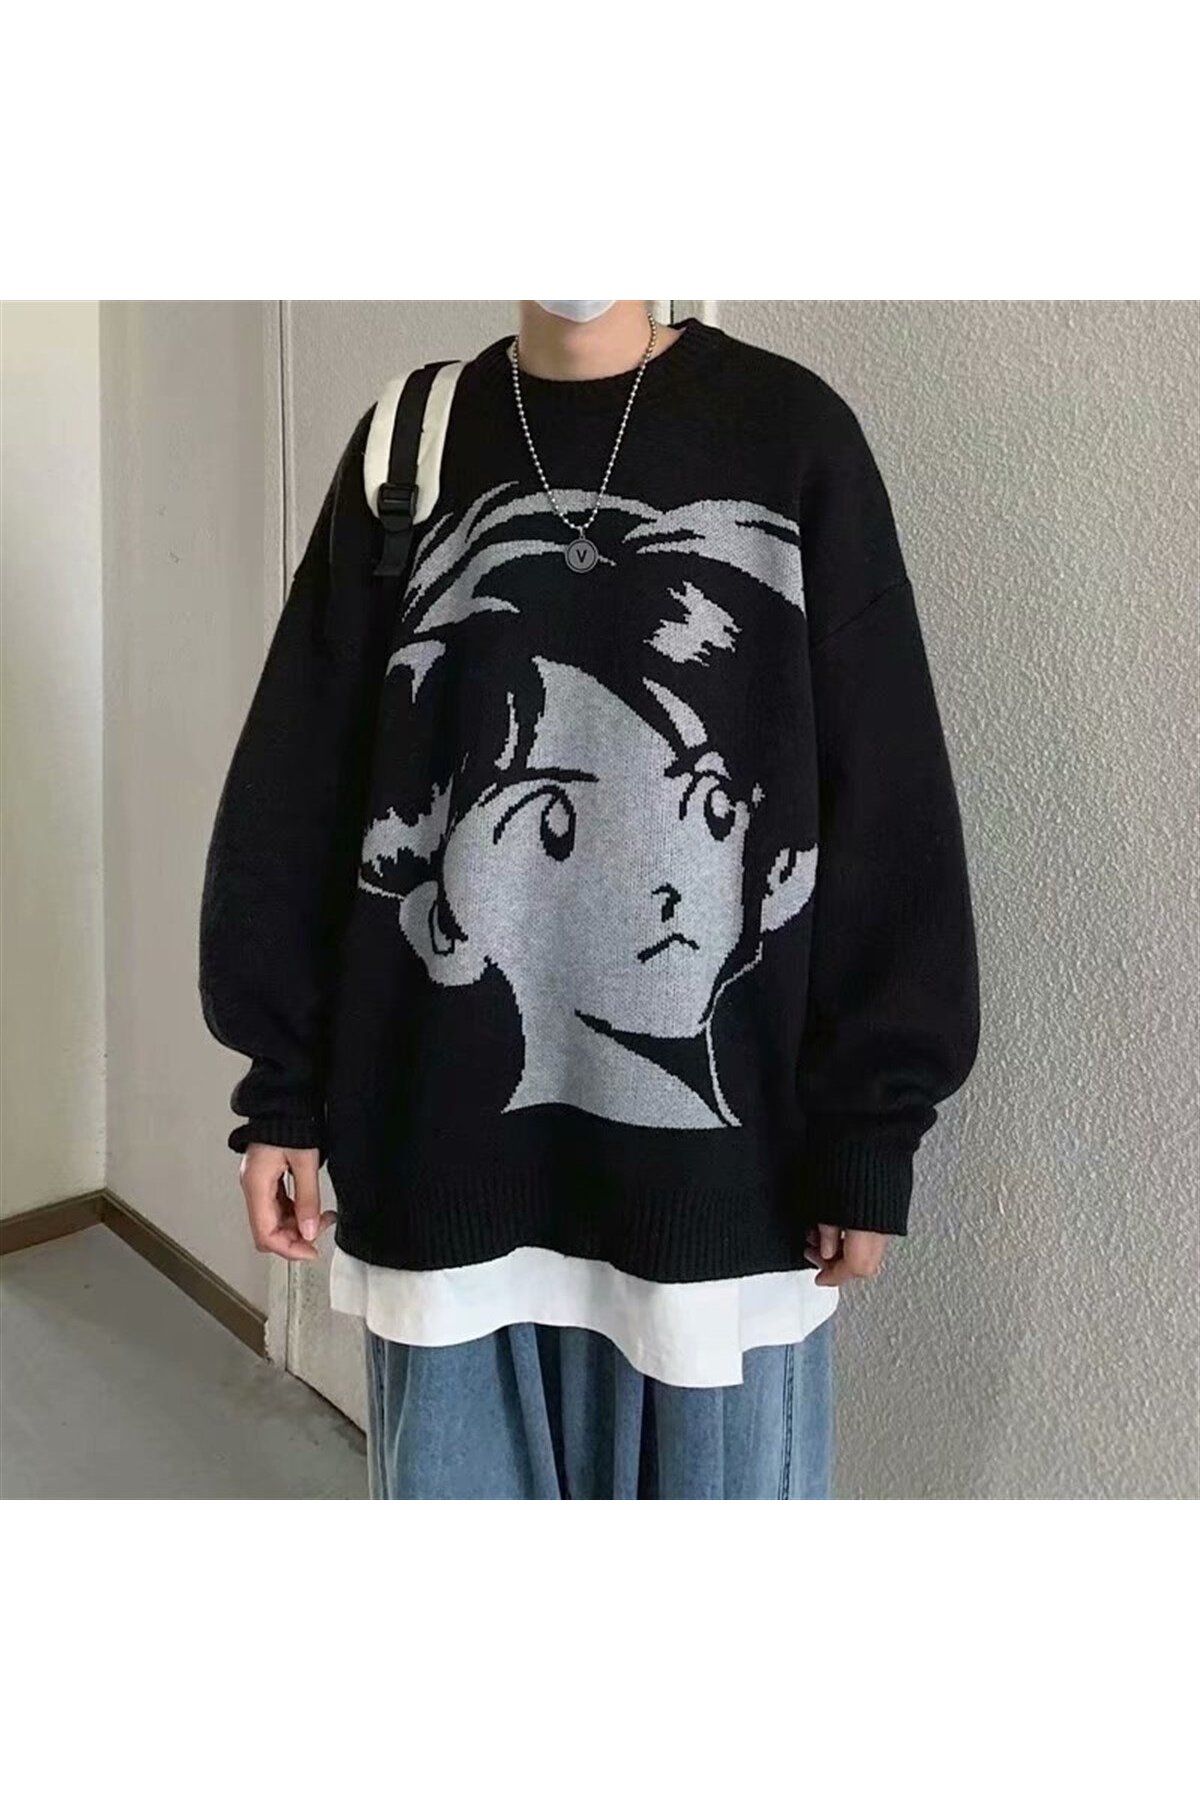 rengarenk outlet Anime Boy Harajuku Vintage Streetwear Unisex Siyah Kazak